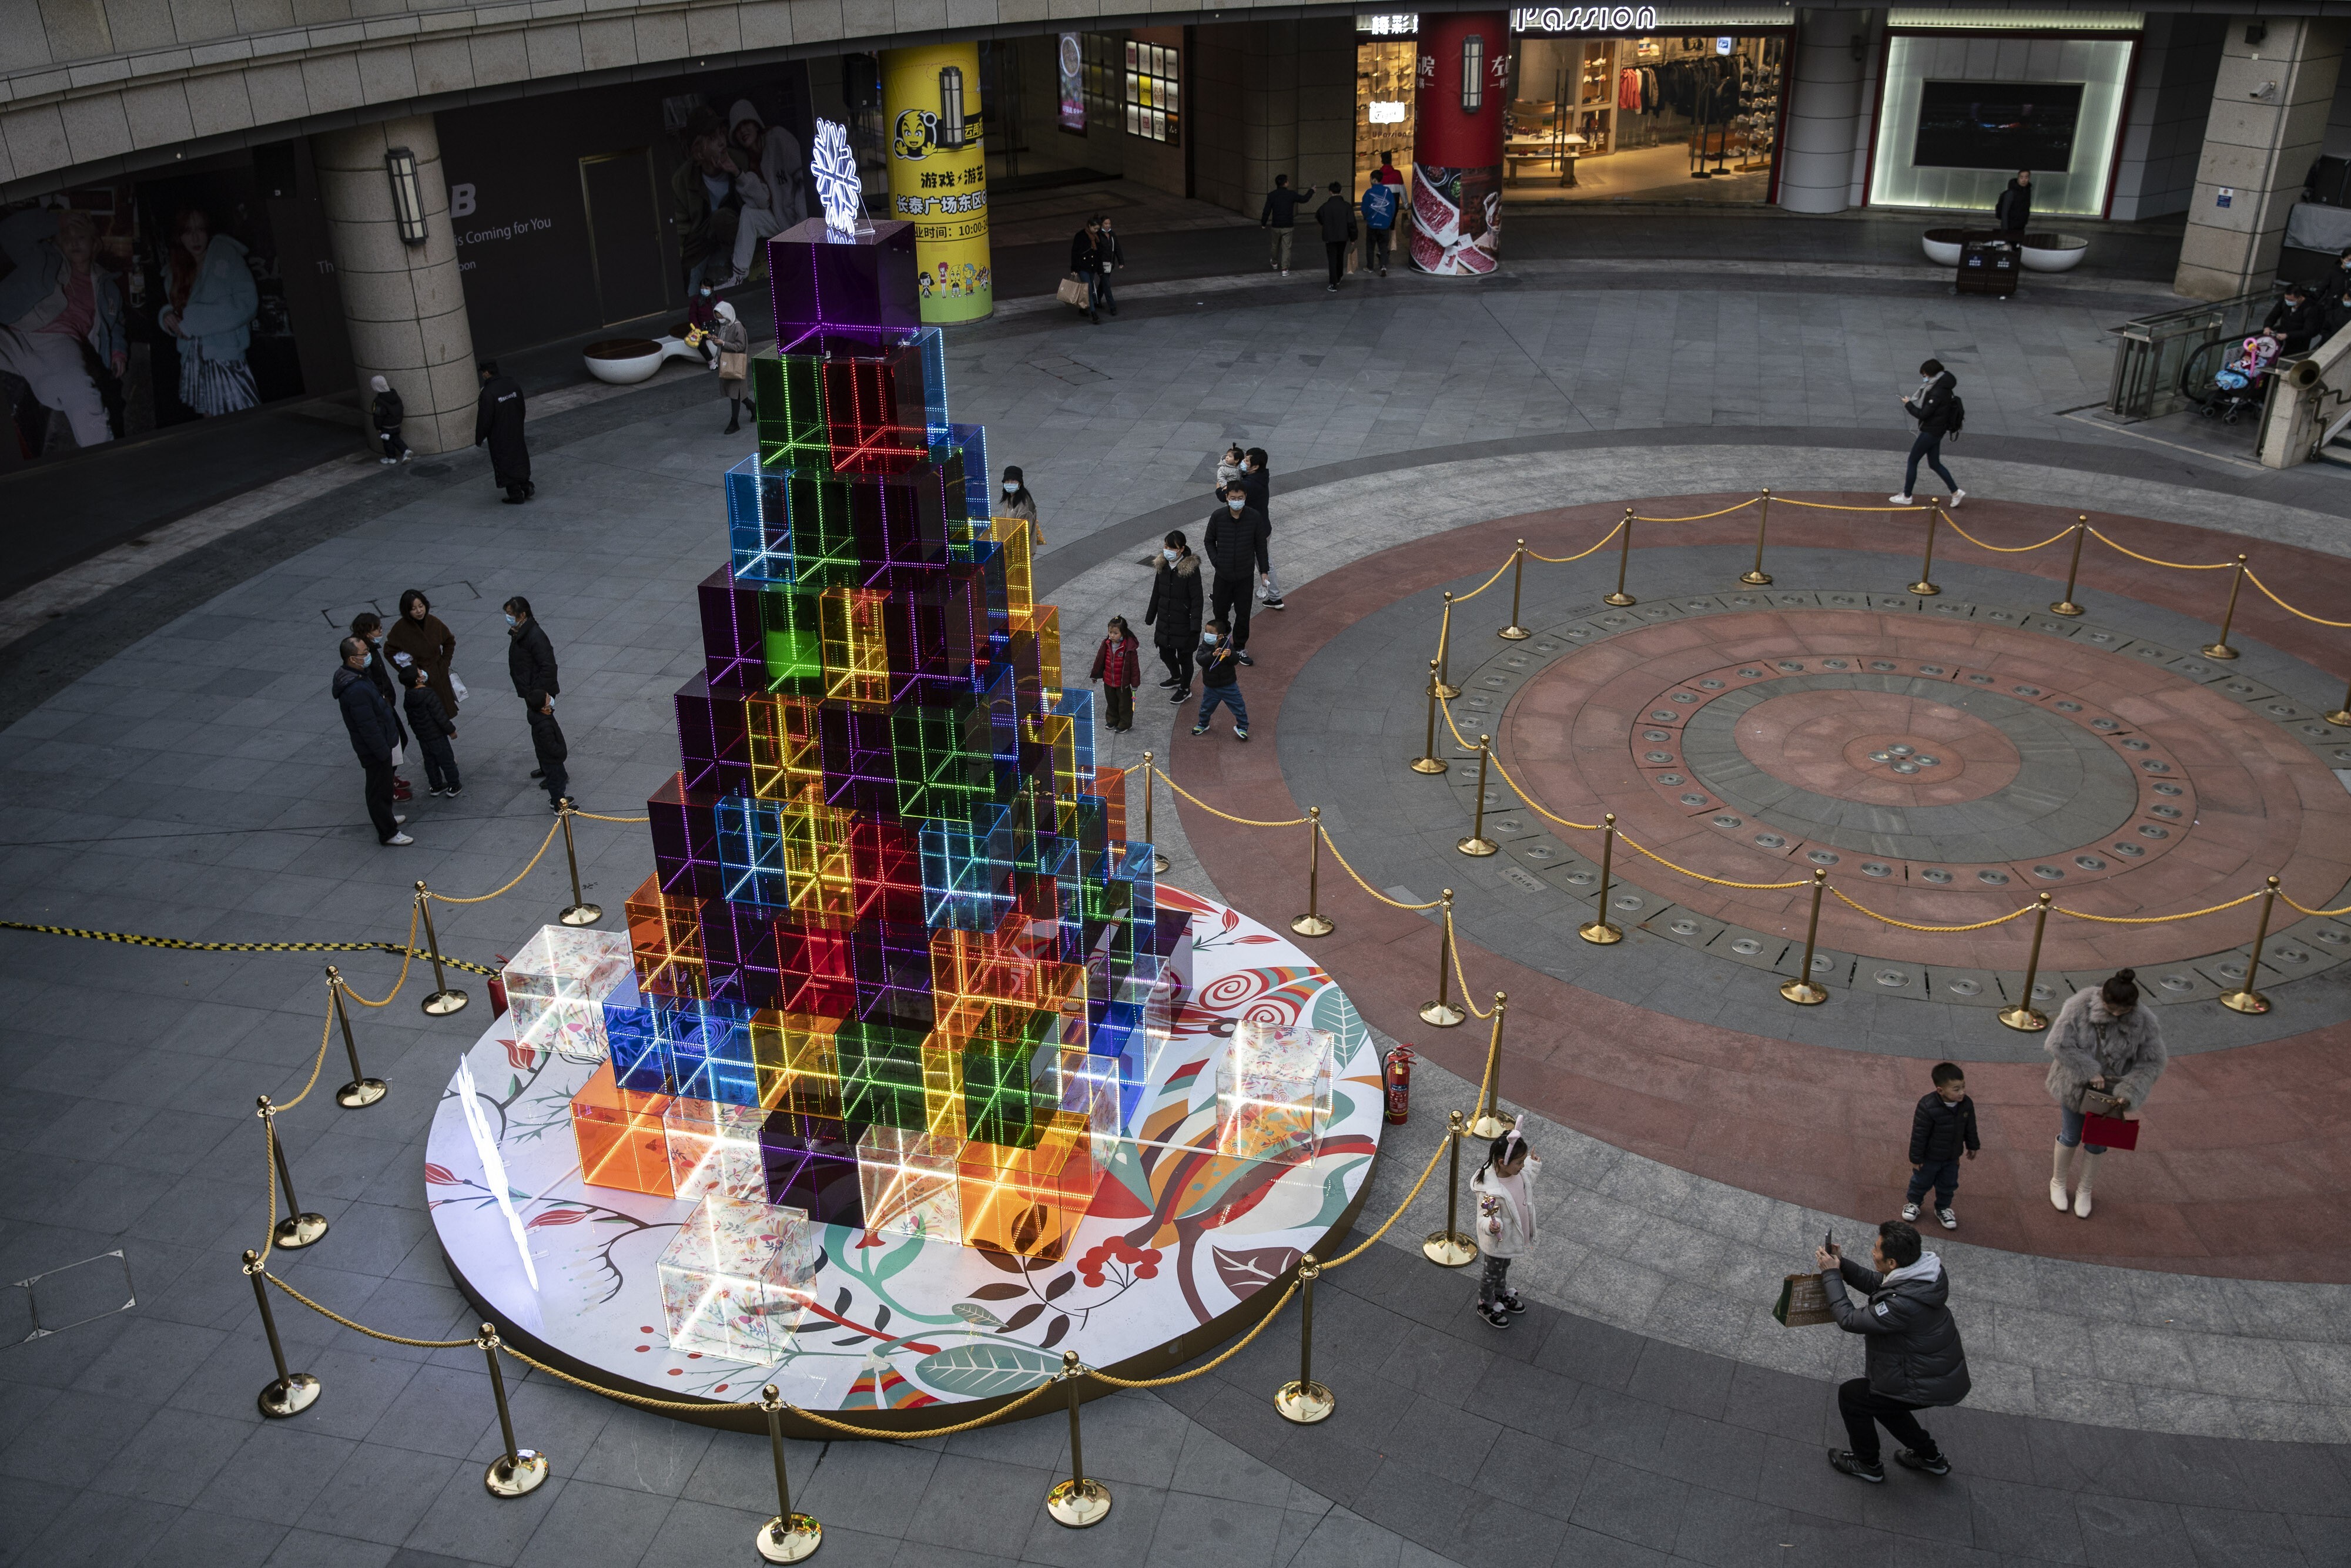 Louis Vuitton Christmas tree is seen at the Xujiahui Shopping